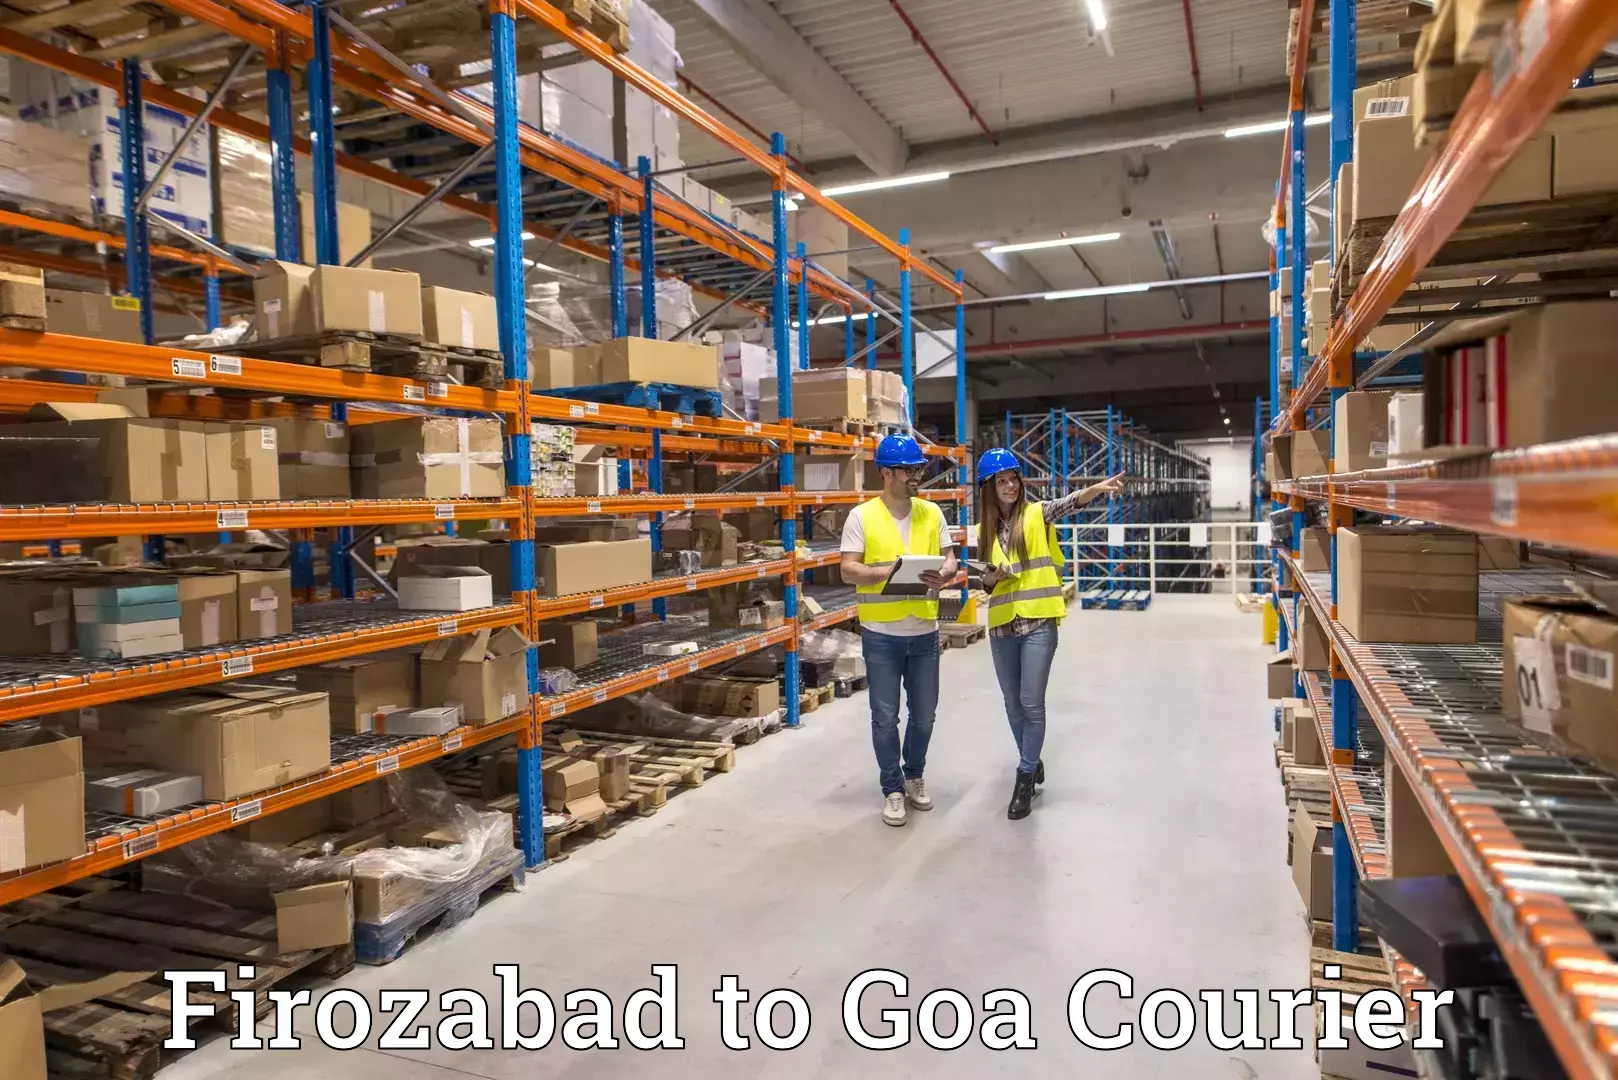 Courier insurance Firozabad to Mormugao Port